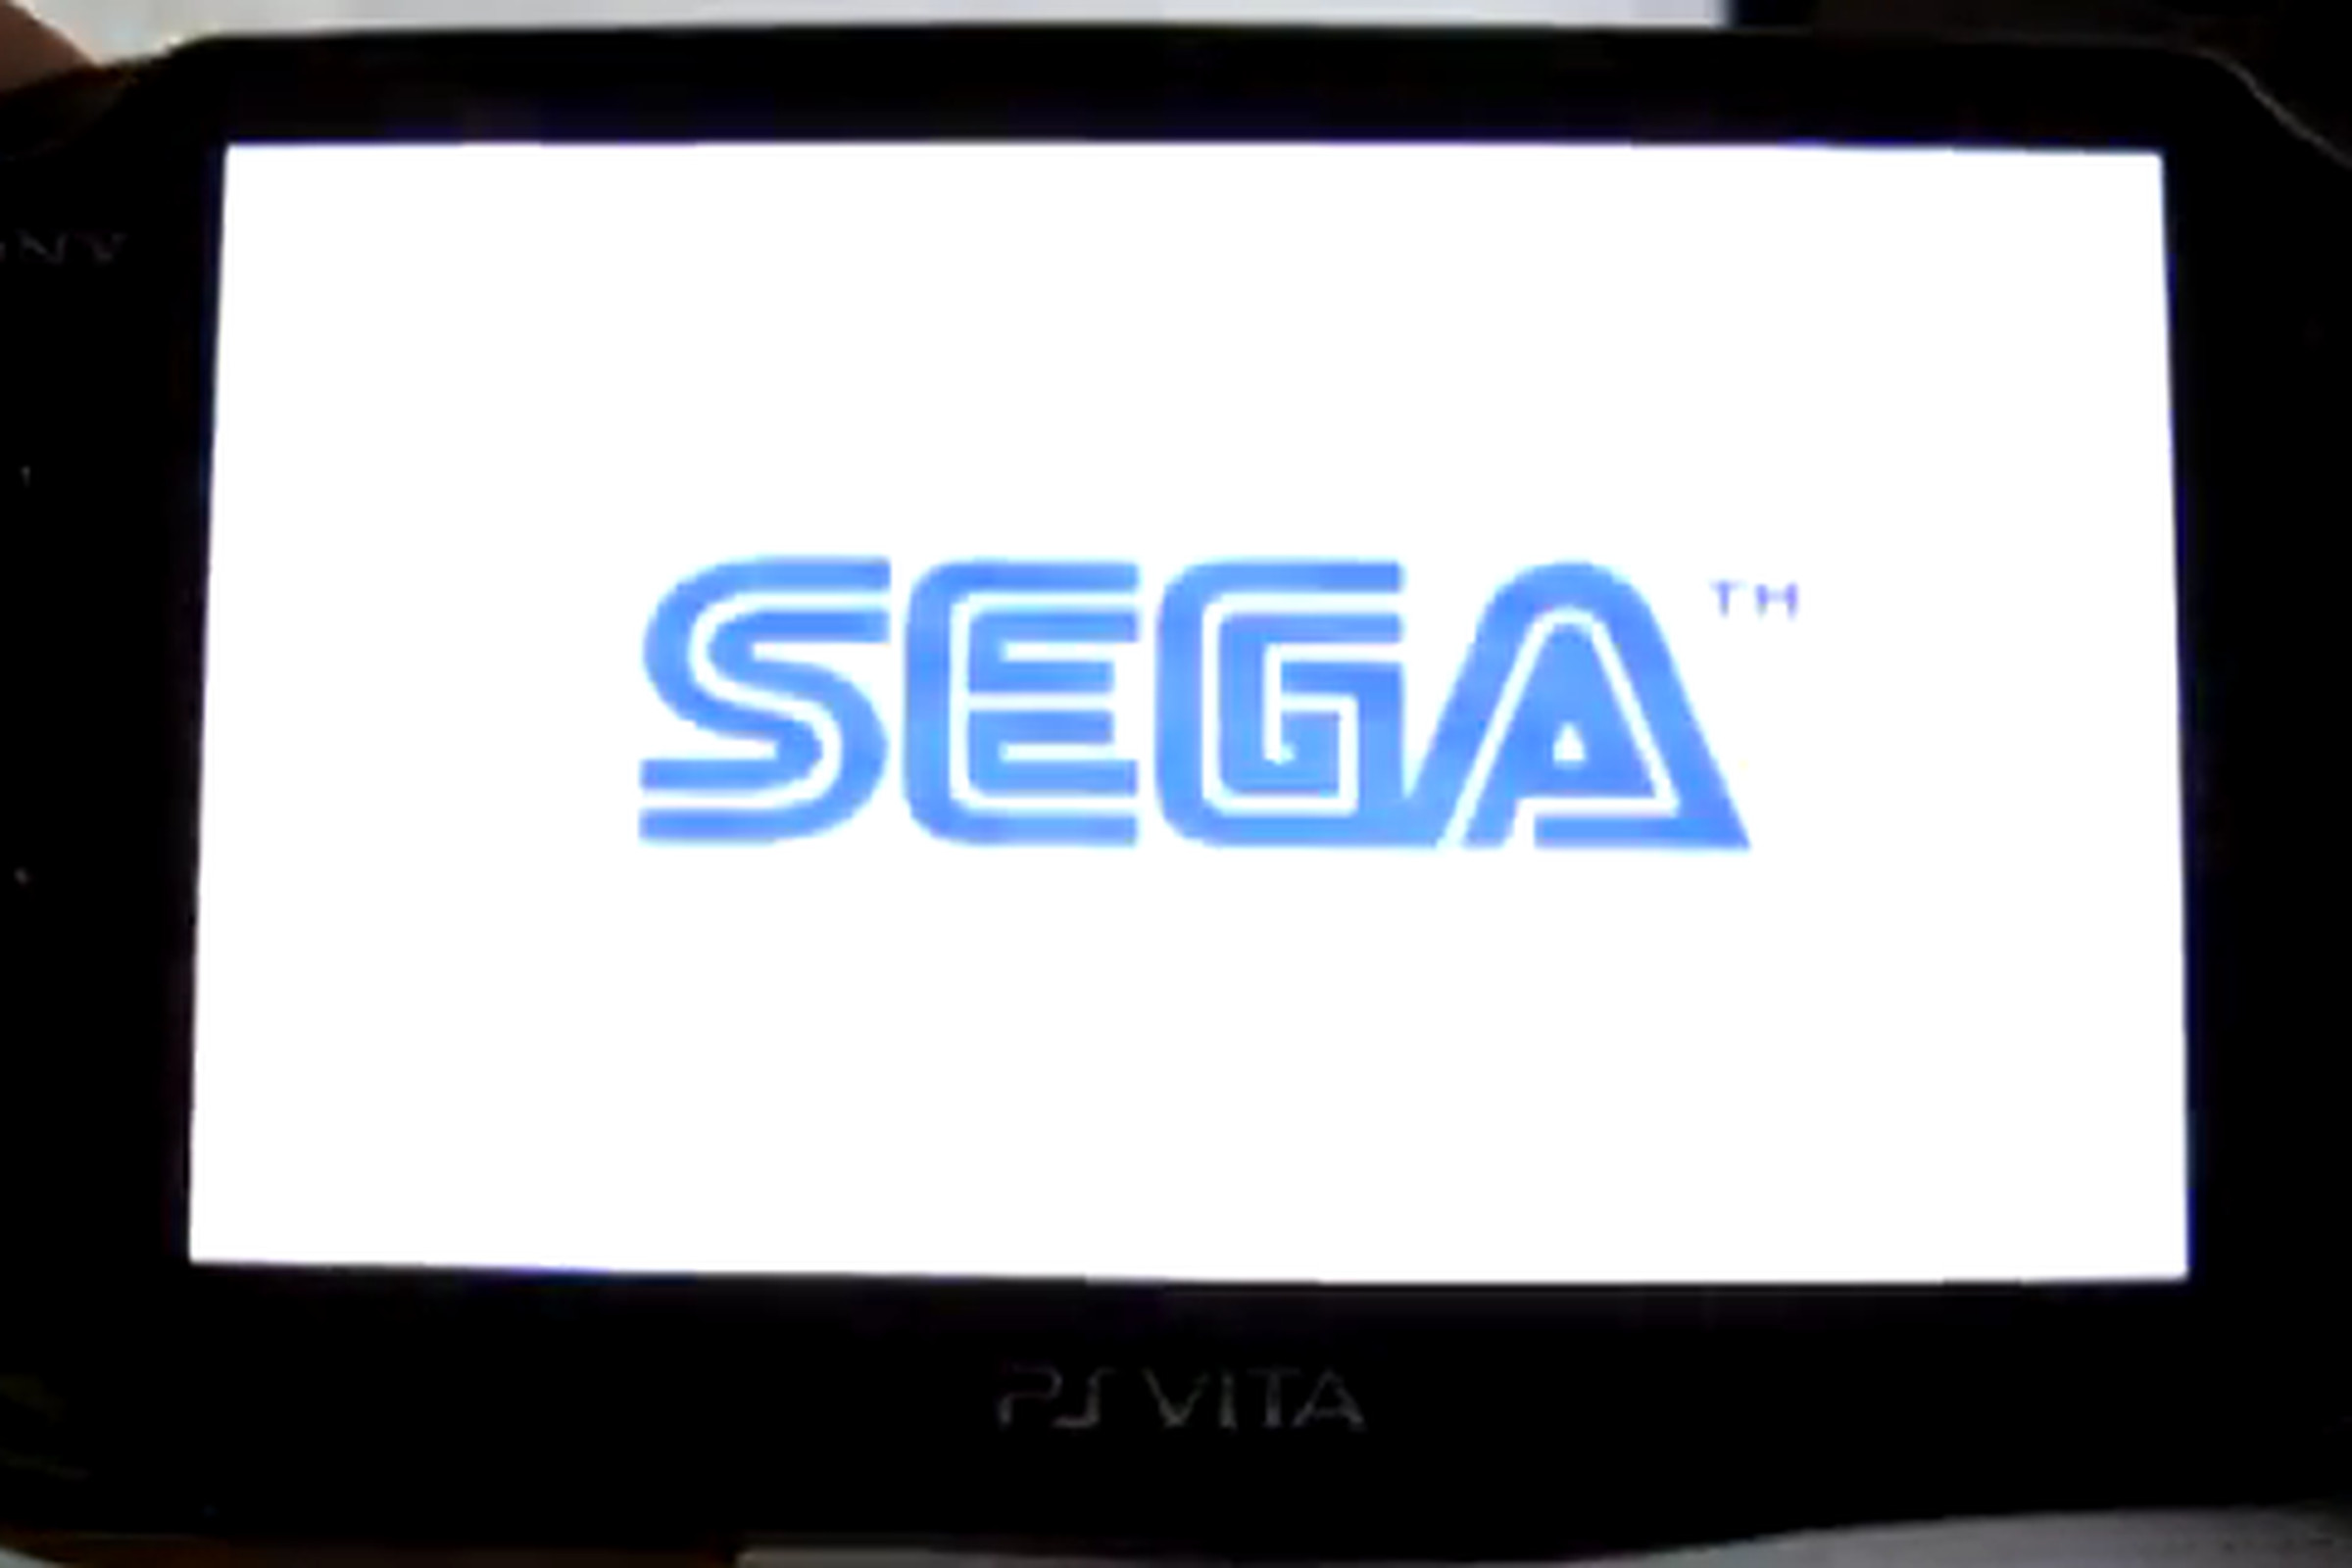 Sega Genesis picodrive PlayStation Vita emulator